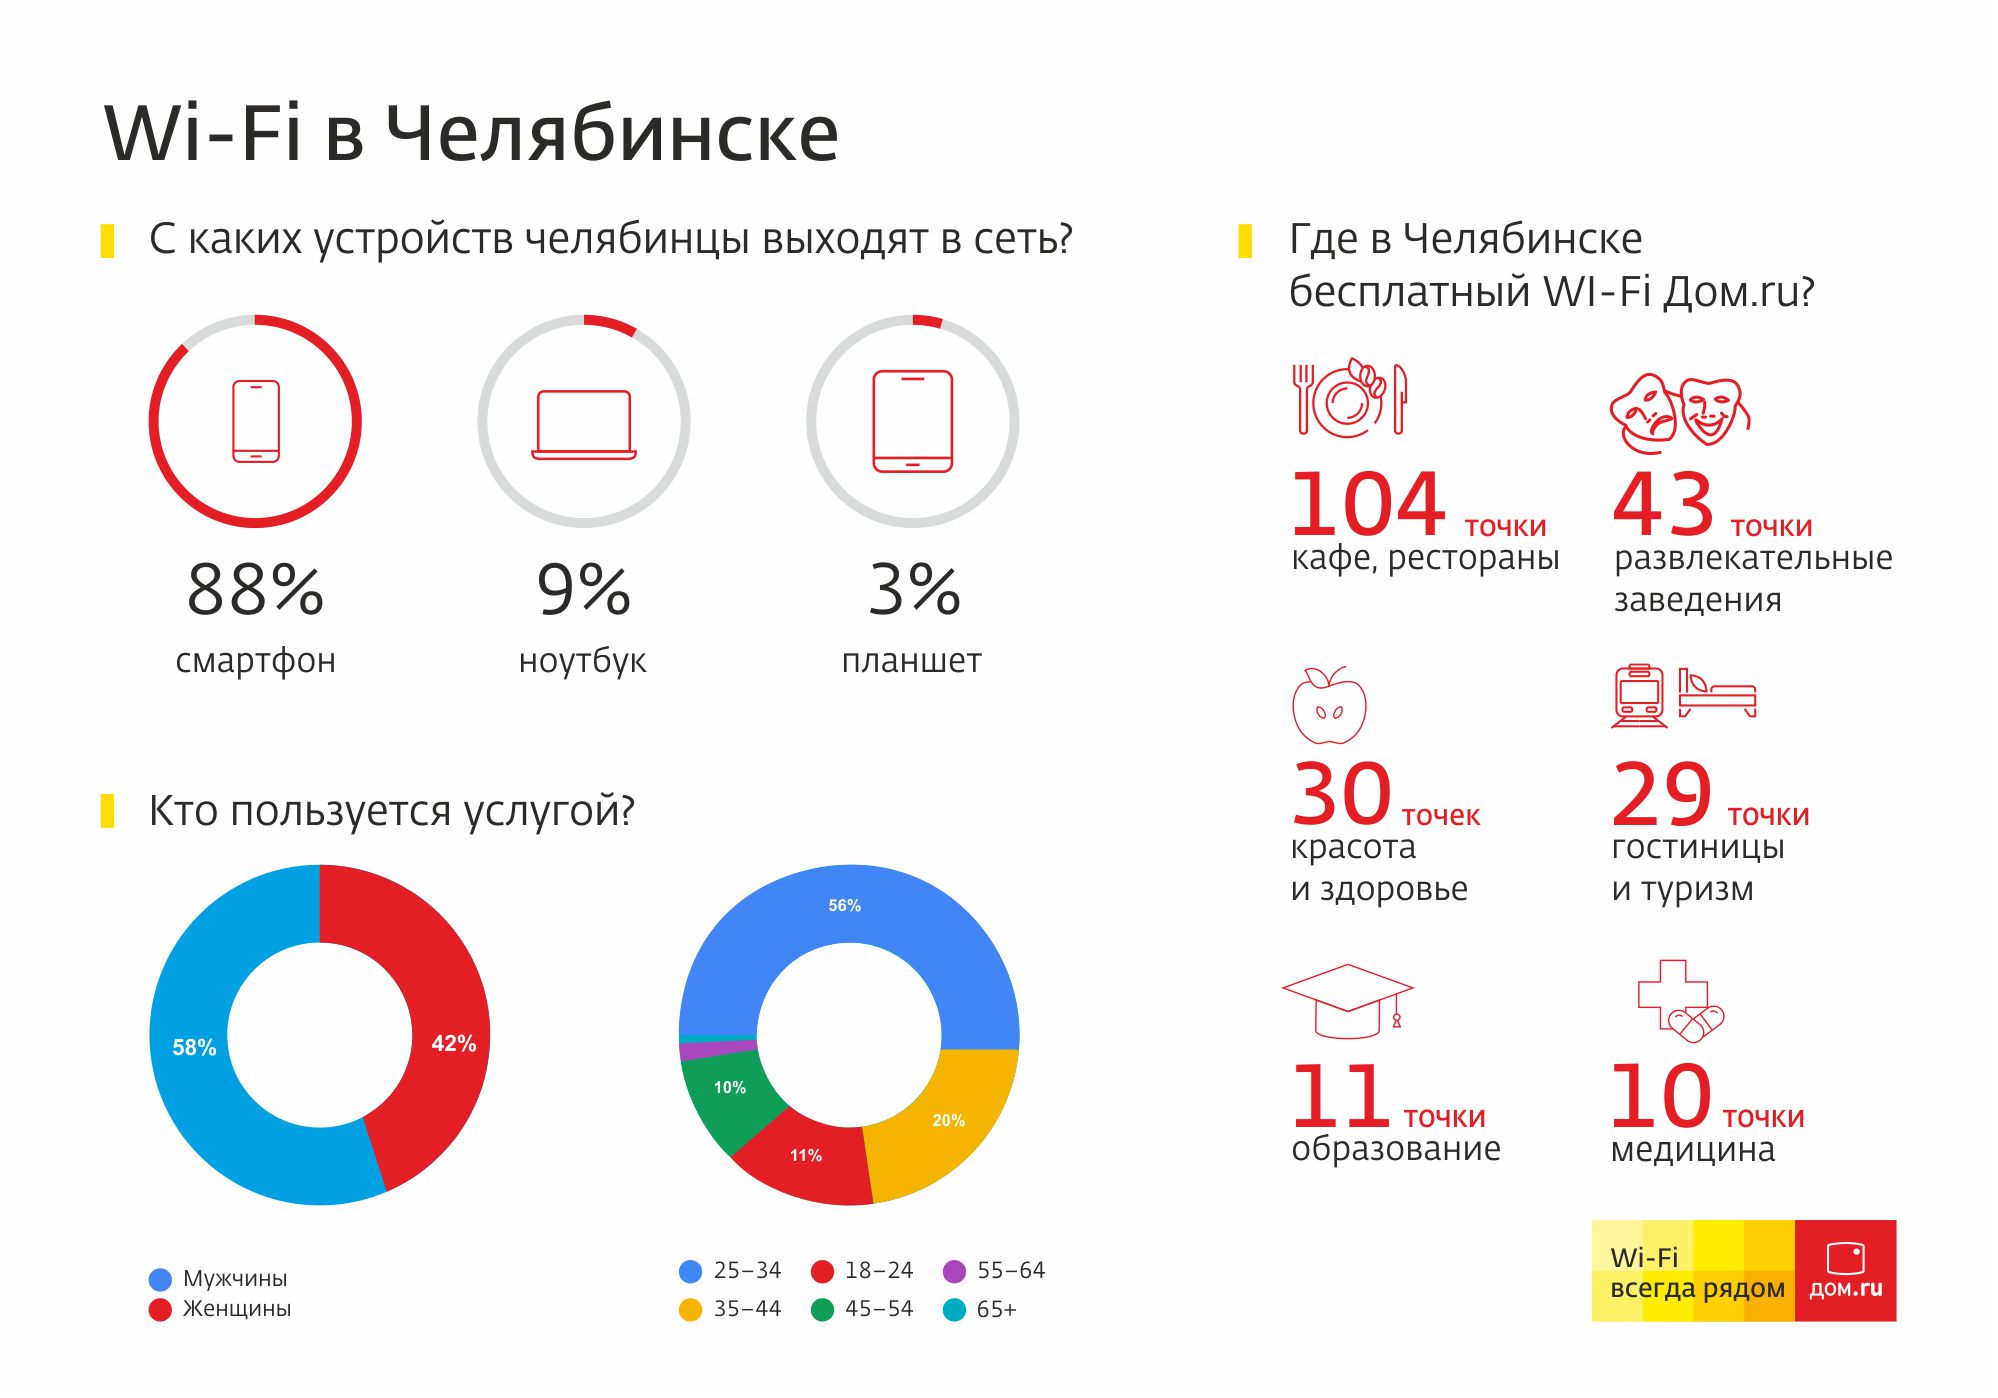 Одна из самых обширных сетей общедоступного Wi-Fi в российских регионах – у «Дом.ru». Только в Че